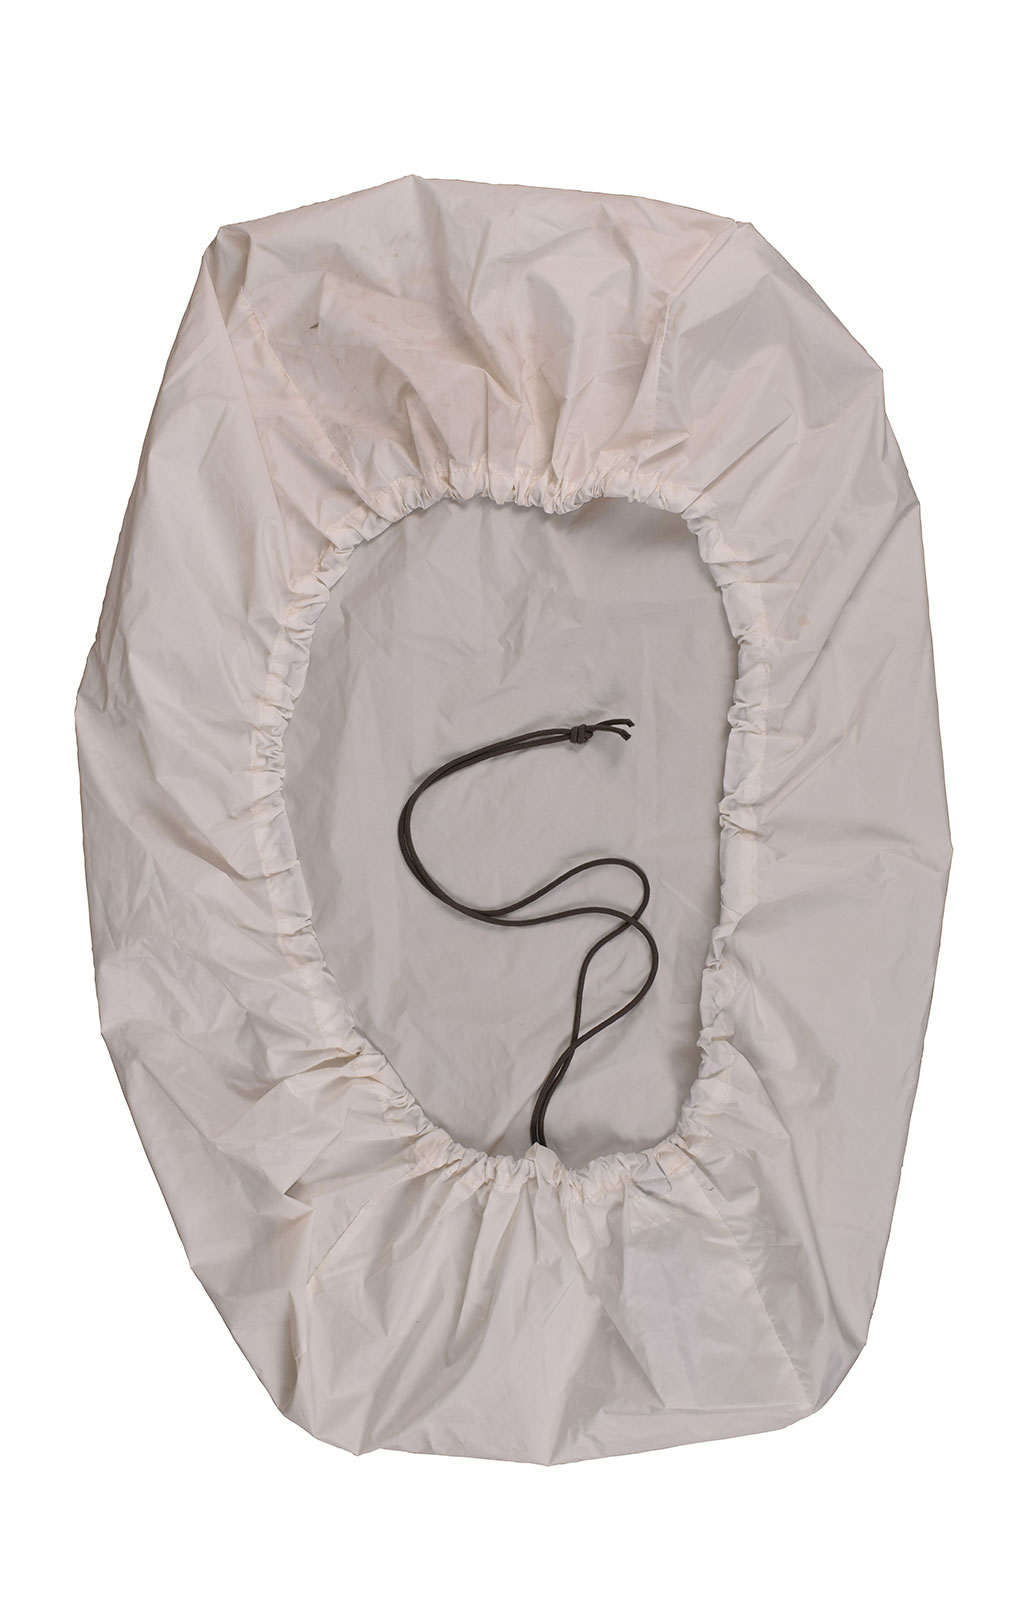 Чехол на рюкзак дождевой маскировочный white б/у Австрия